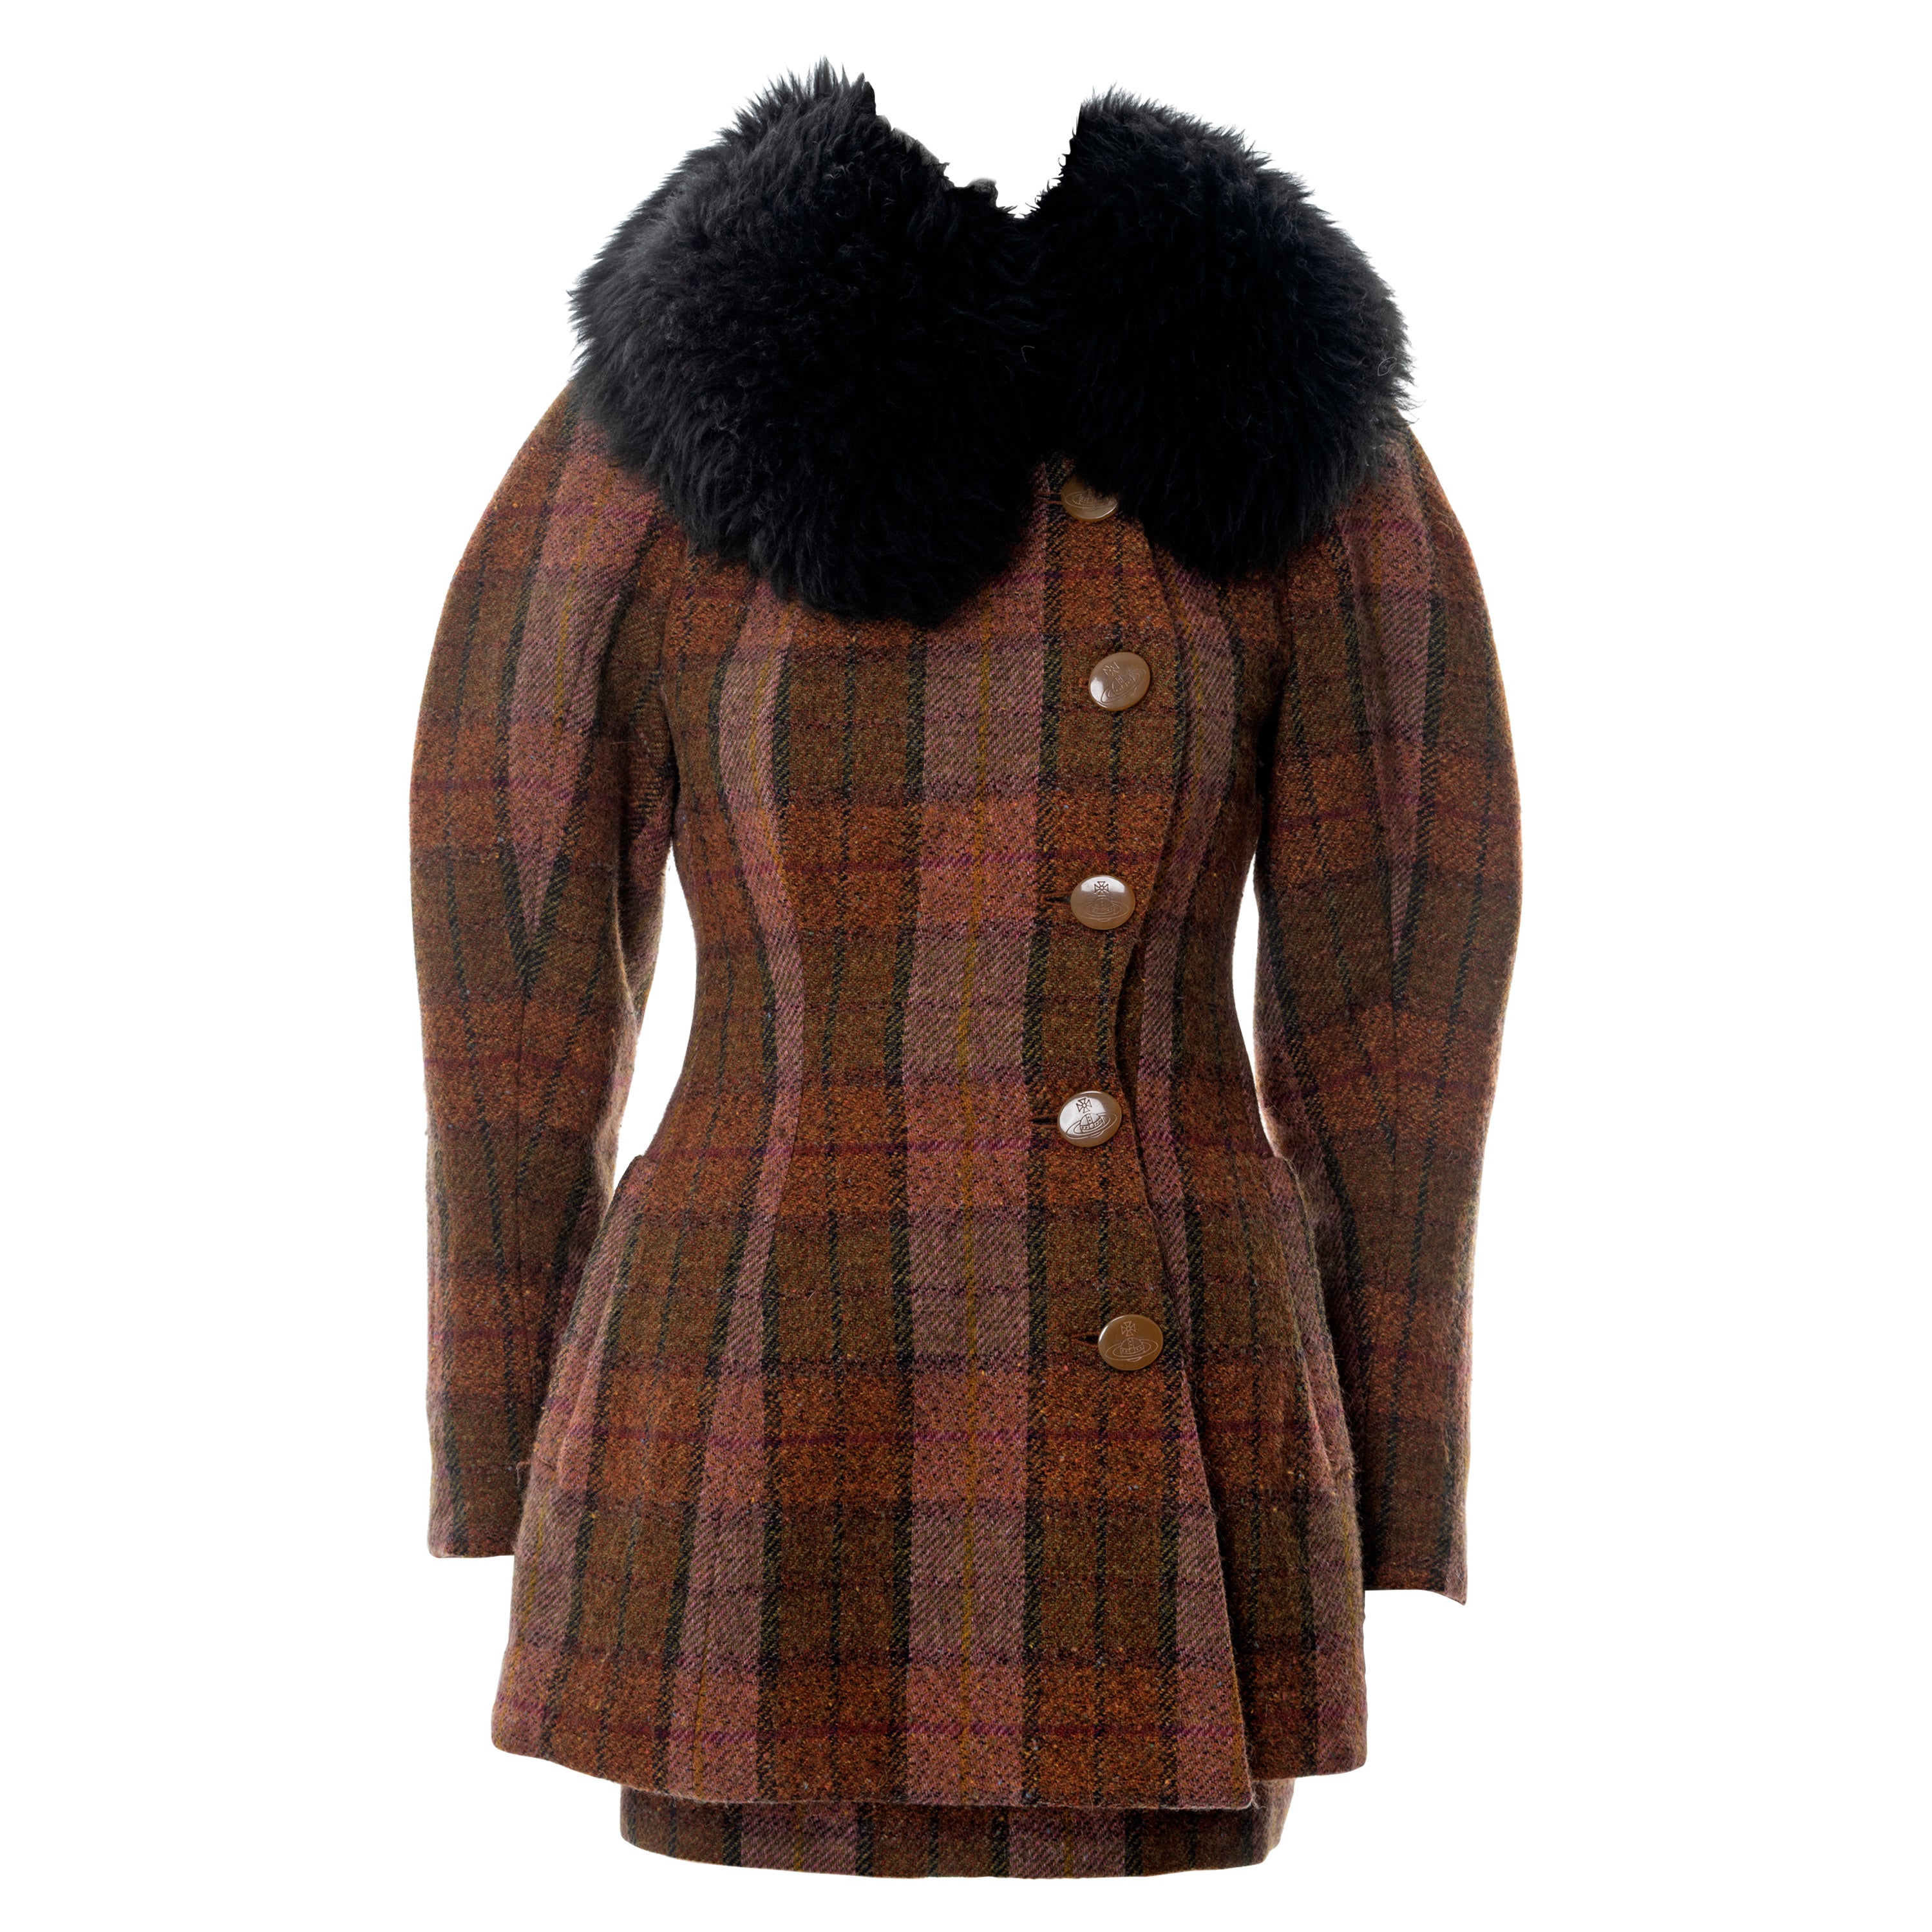 Vivienne Westwood brown tartan tweed skirt suit with sheepskin collar, fw 1995